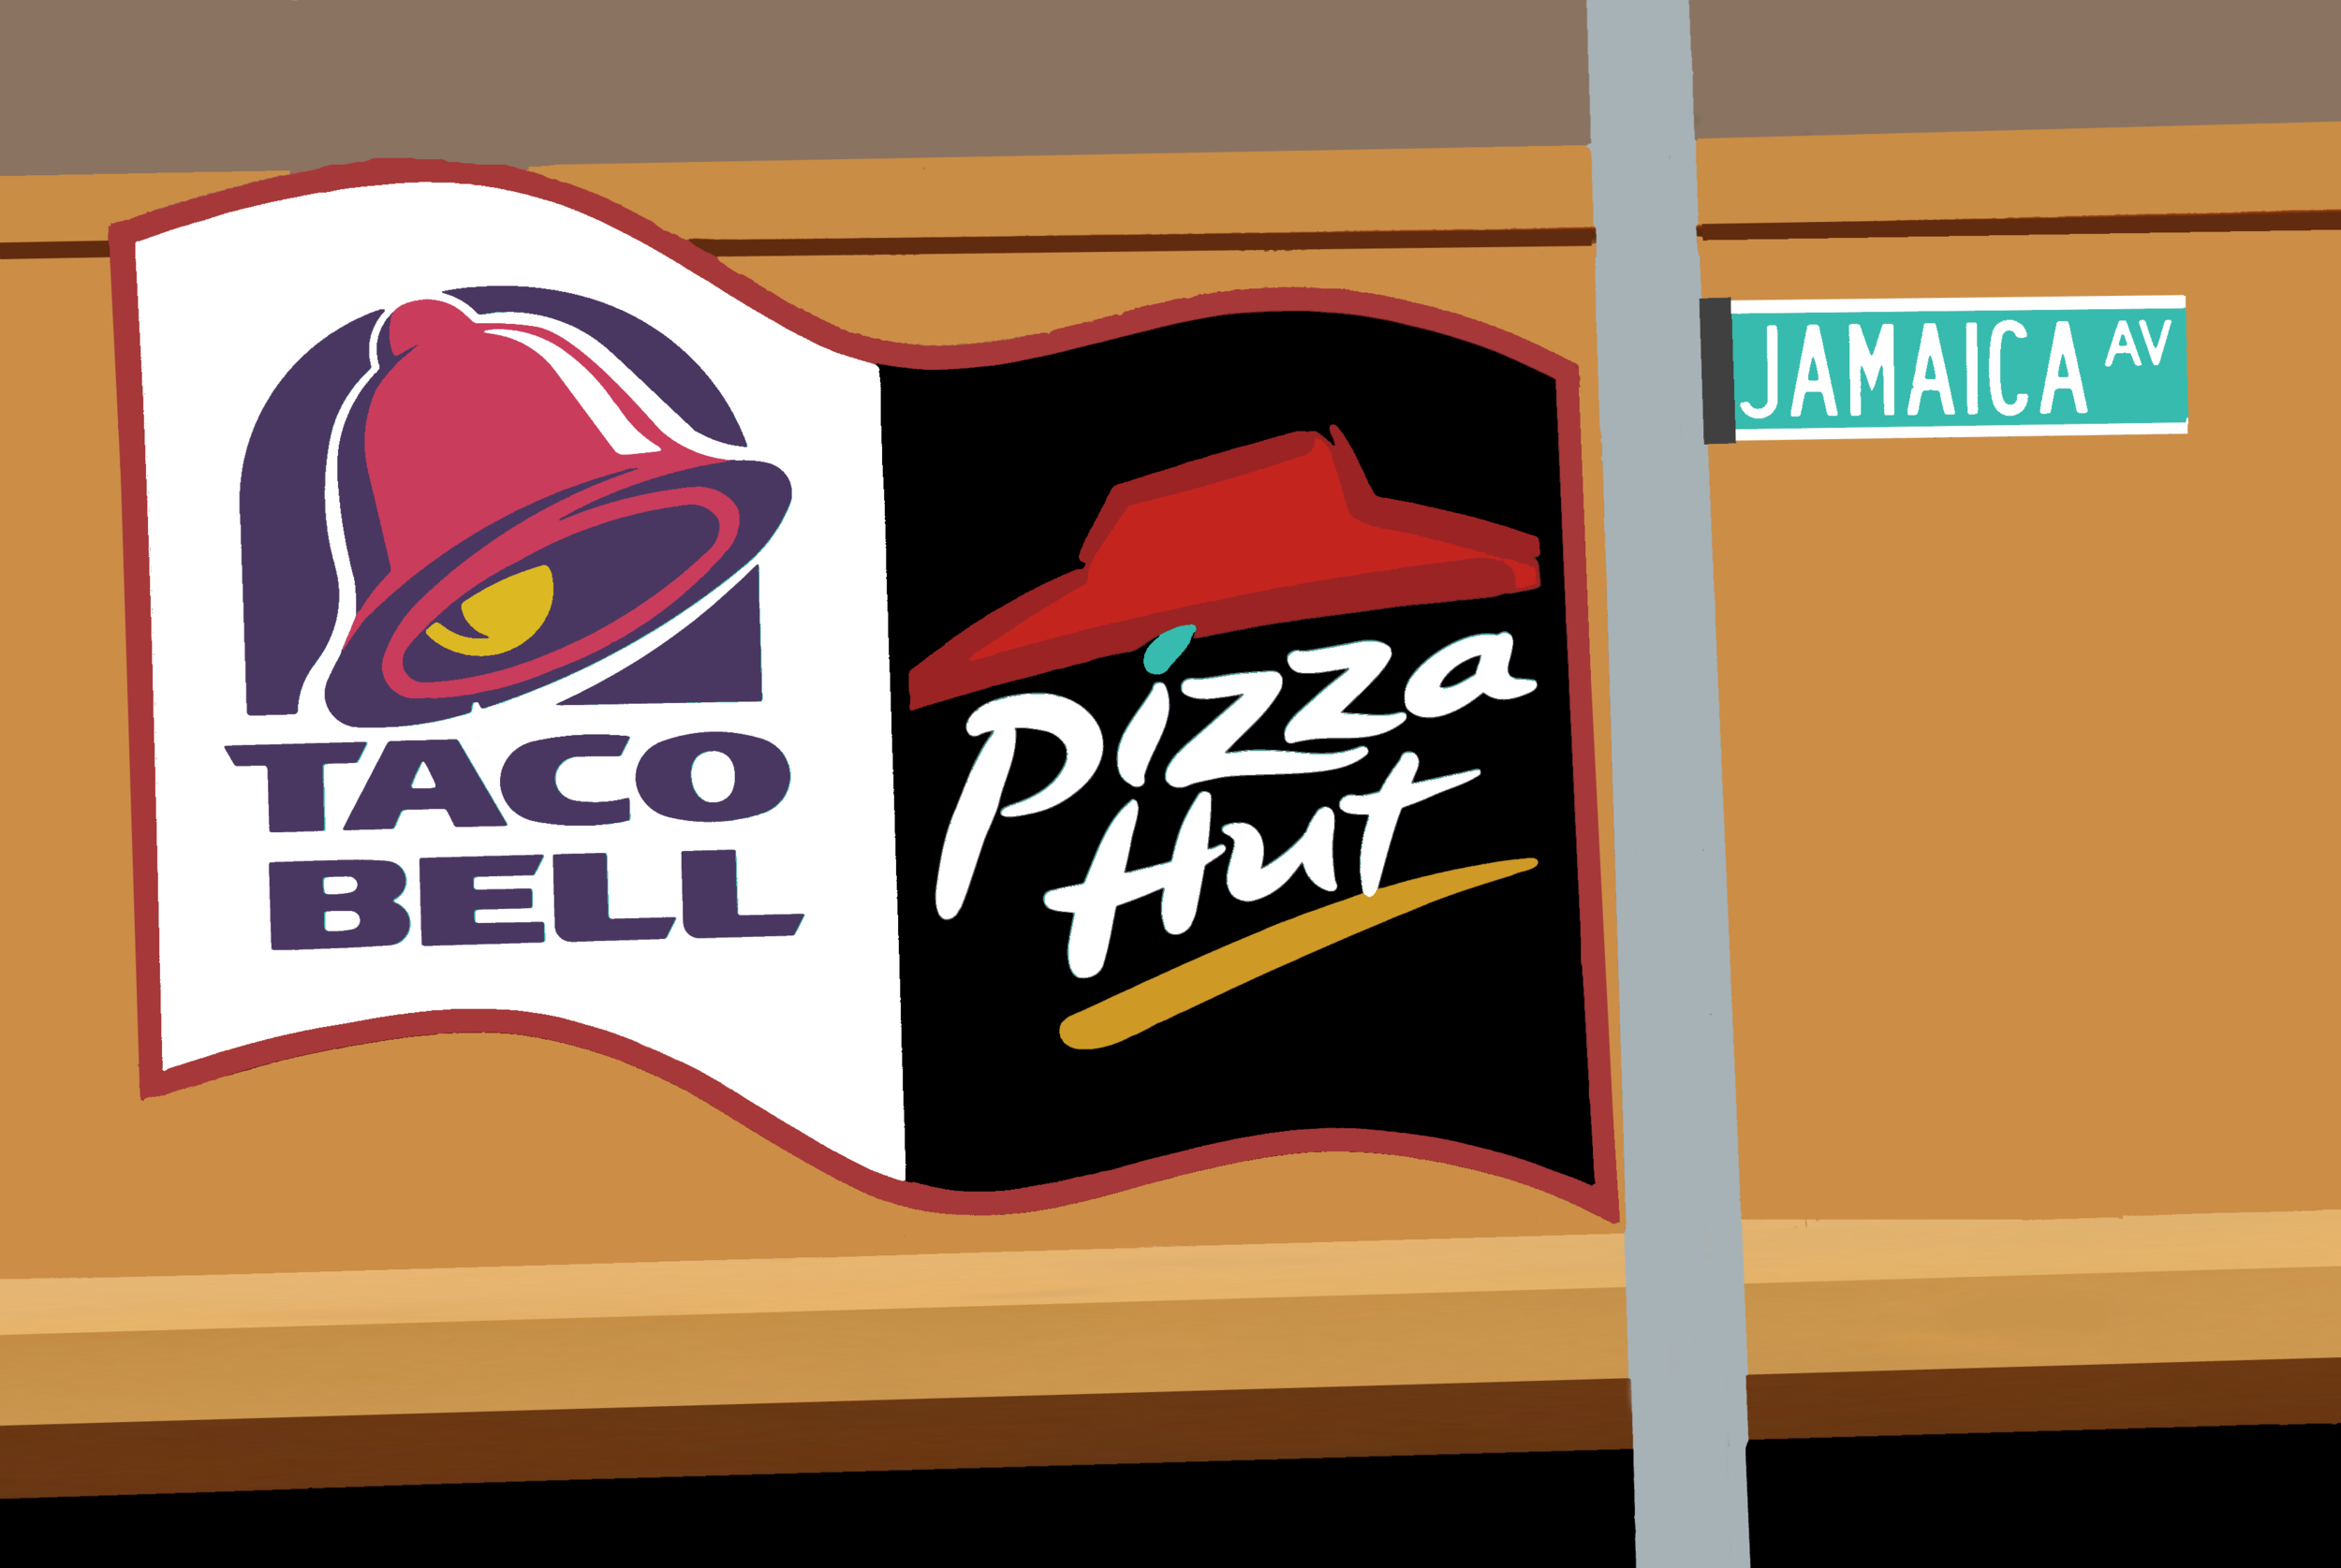 Taco Bell Pizza Hut edit 2.png